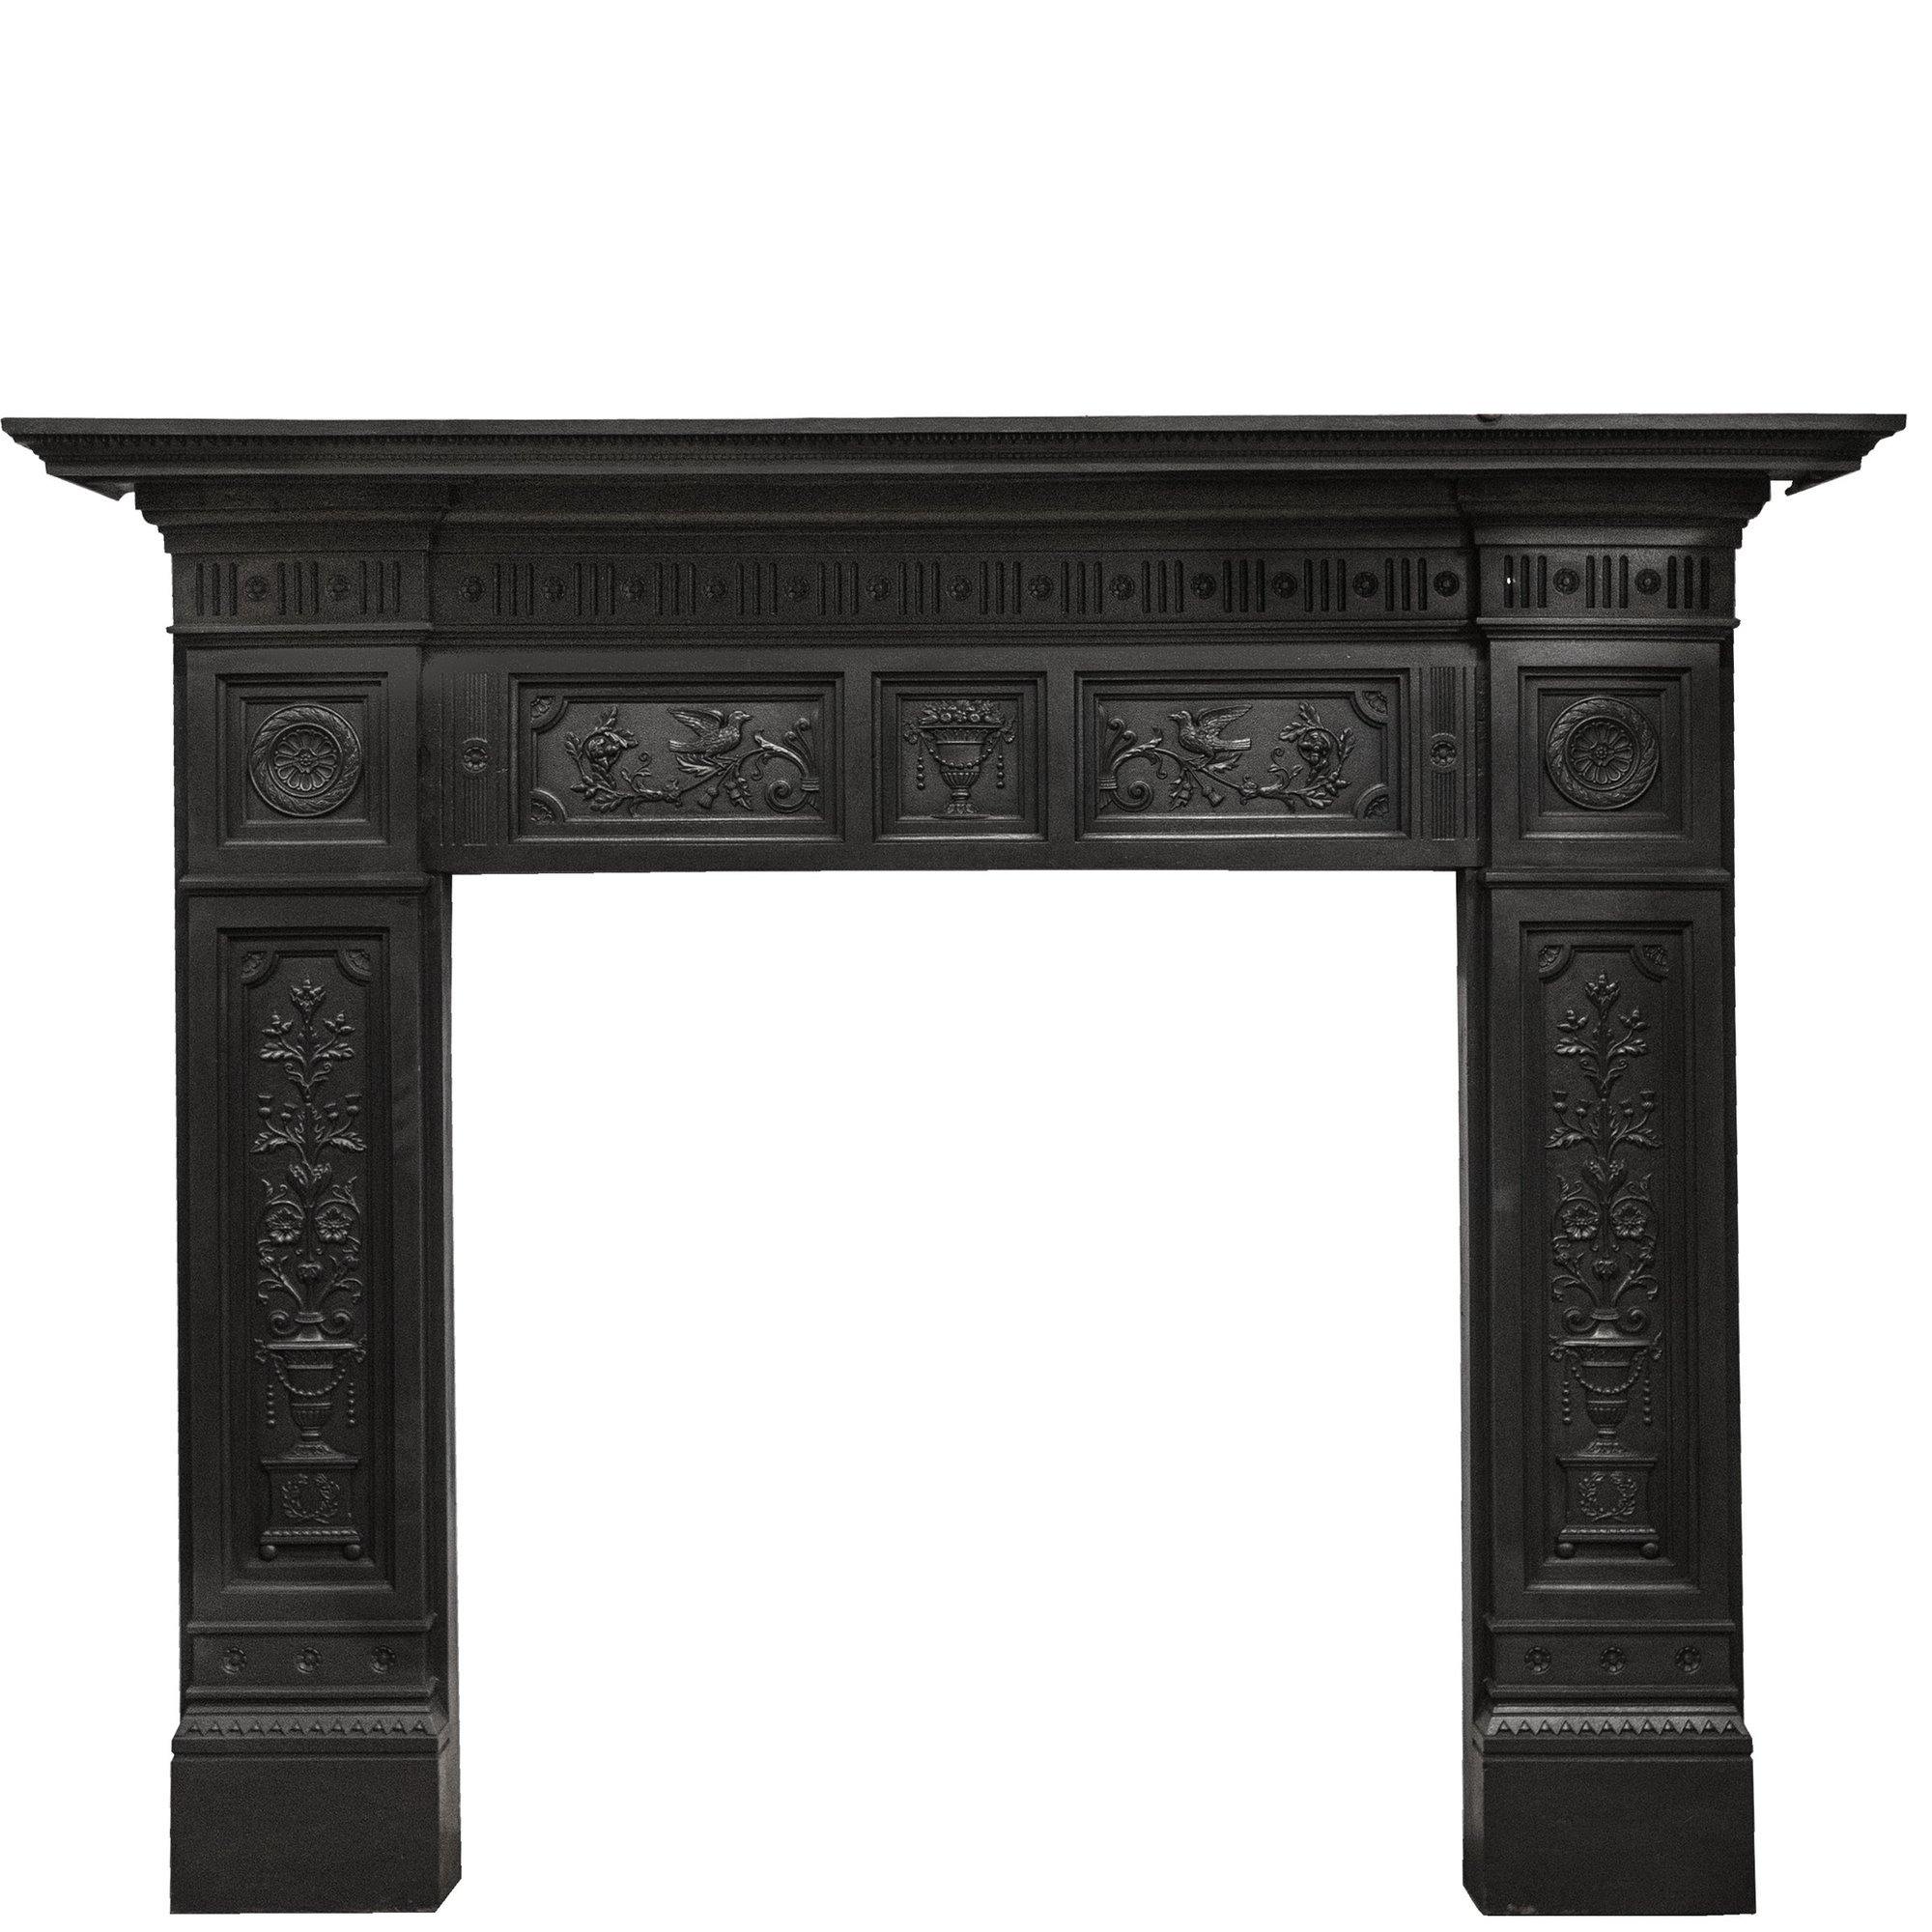 Antique Cast Iron Fireplace Surrounds | Chimneypieces | Mantels